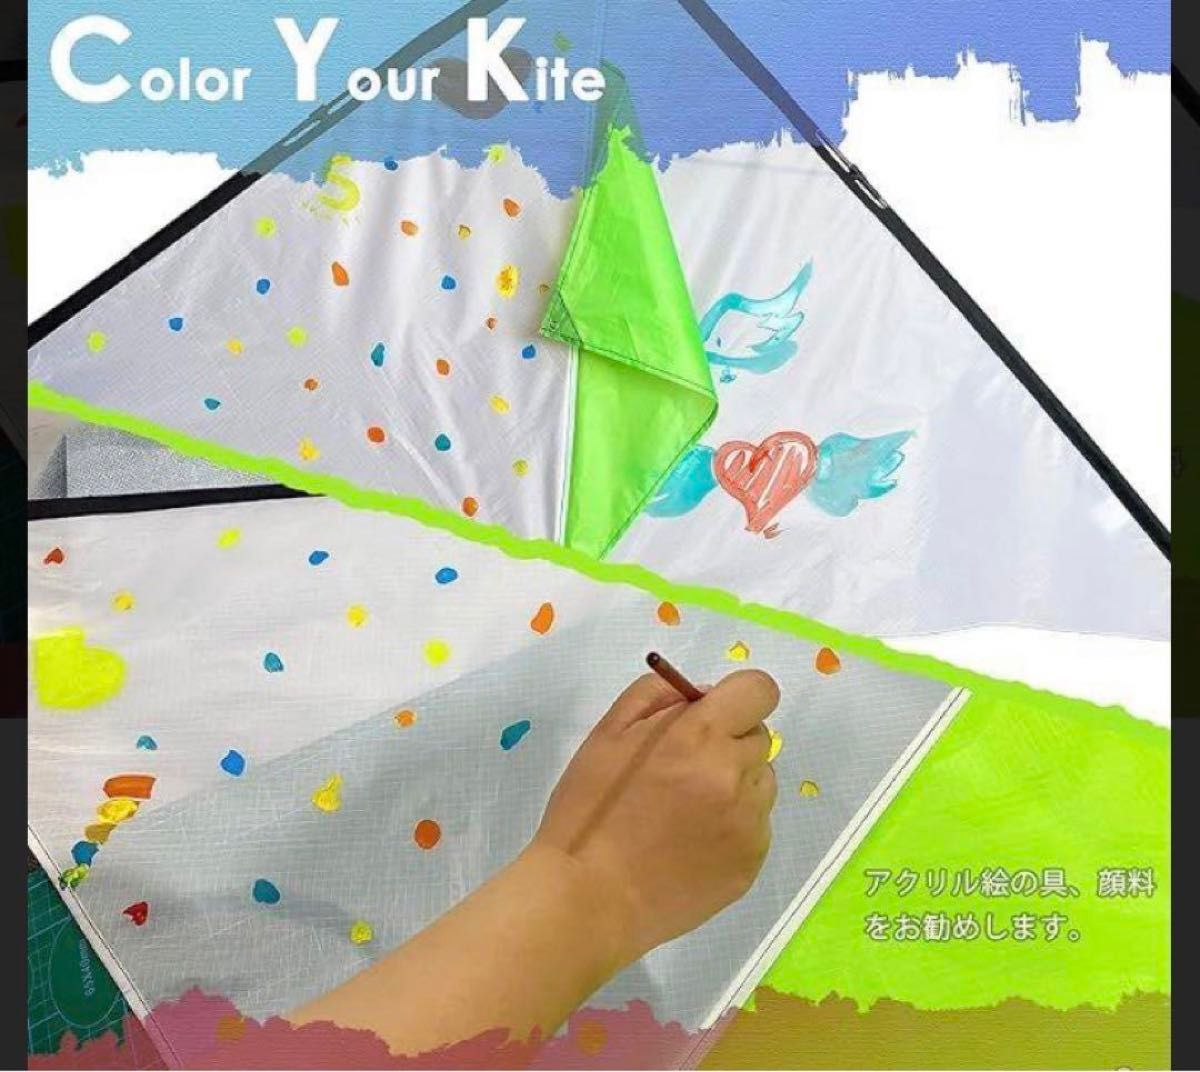 黄 emma kites 1.5M 三角凧 イエロー 超簡単 揚がる 凧 推し活